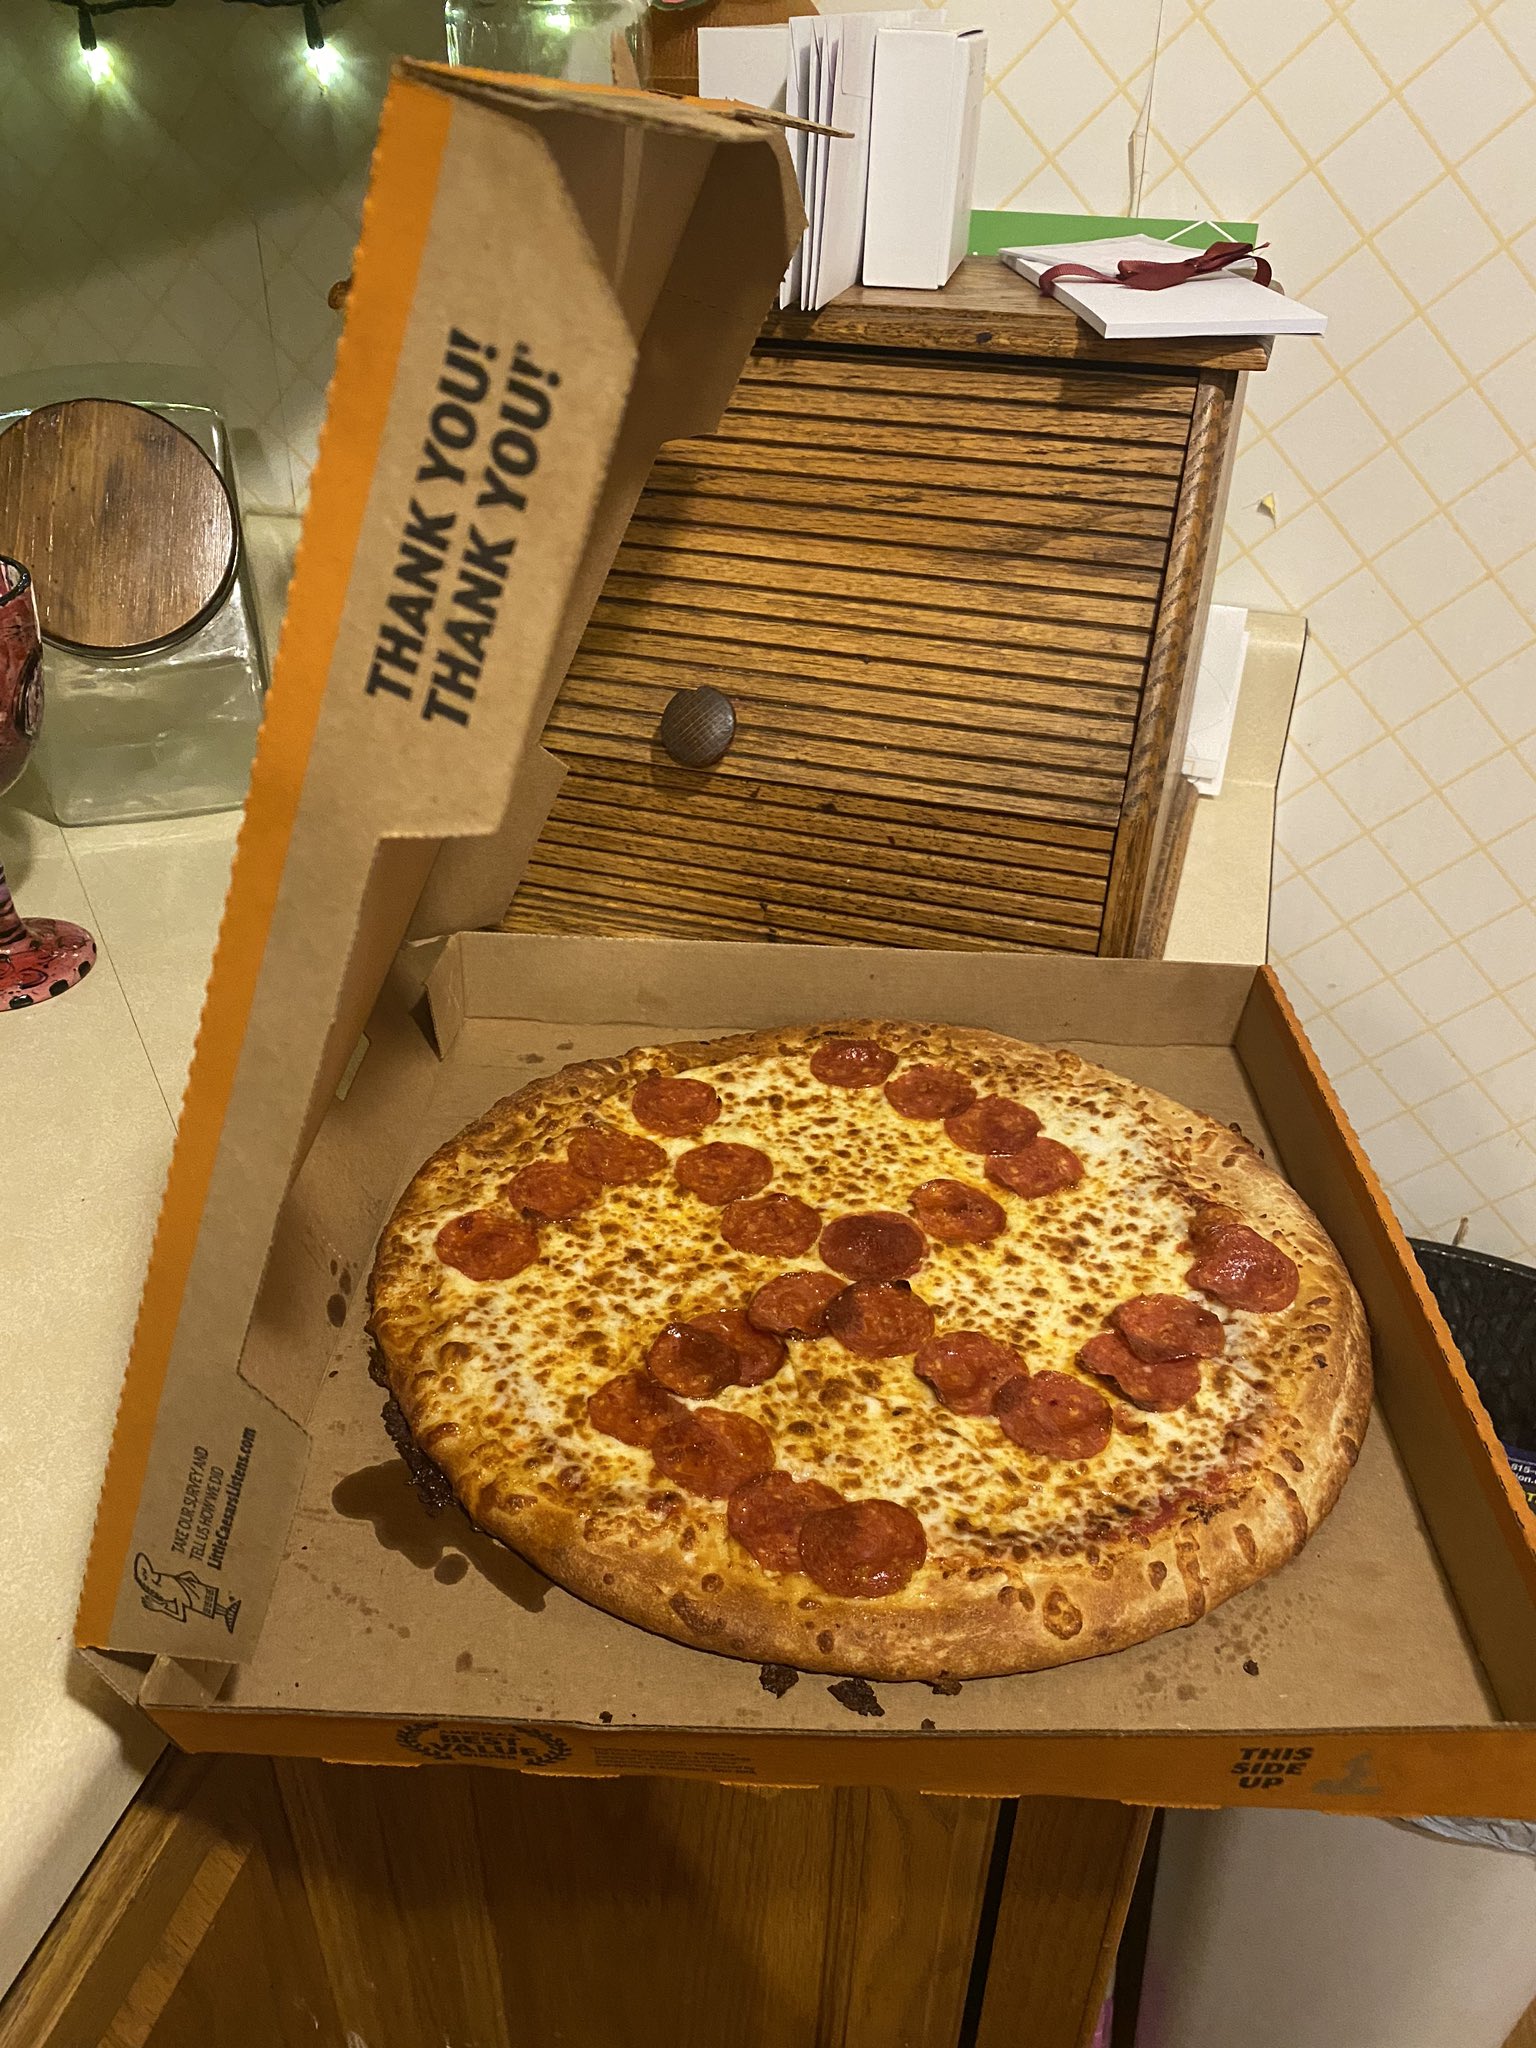 Hombre compra una pizza y encuentra en ella un símbolo nazi hecho con pepperoni